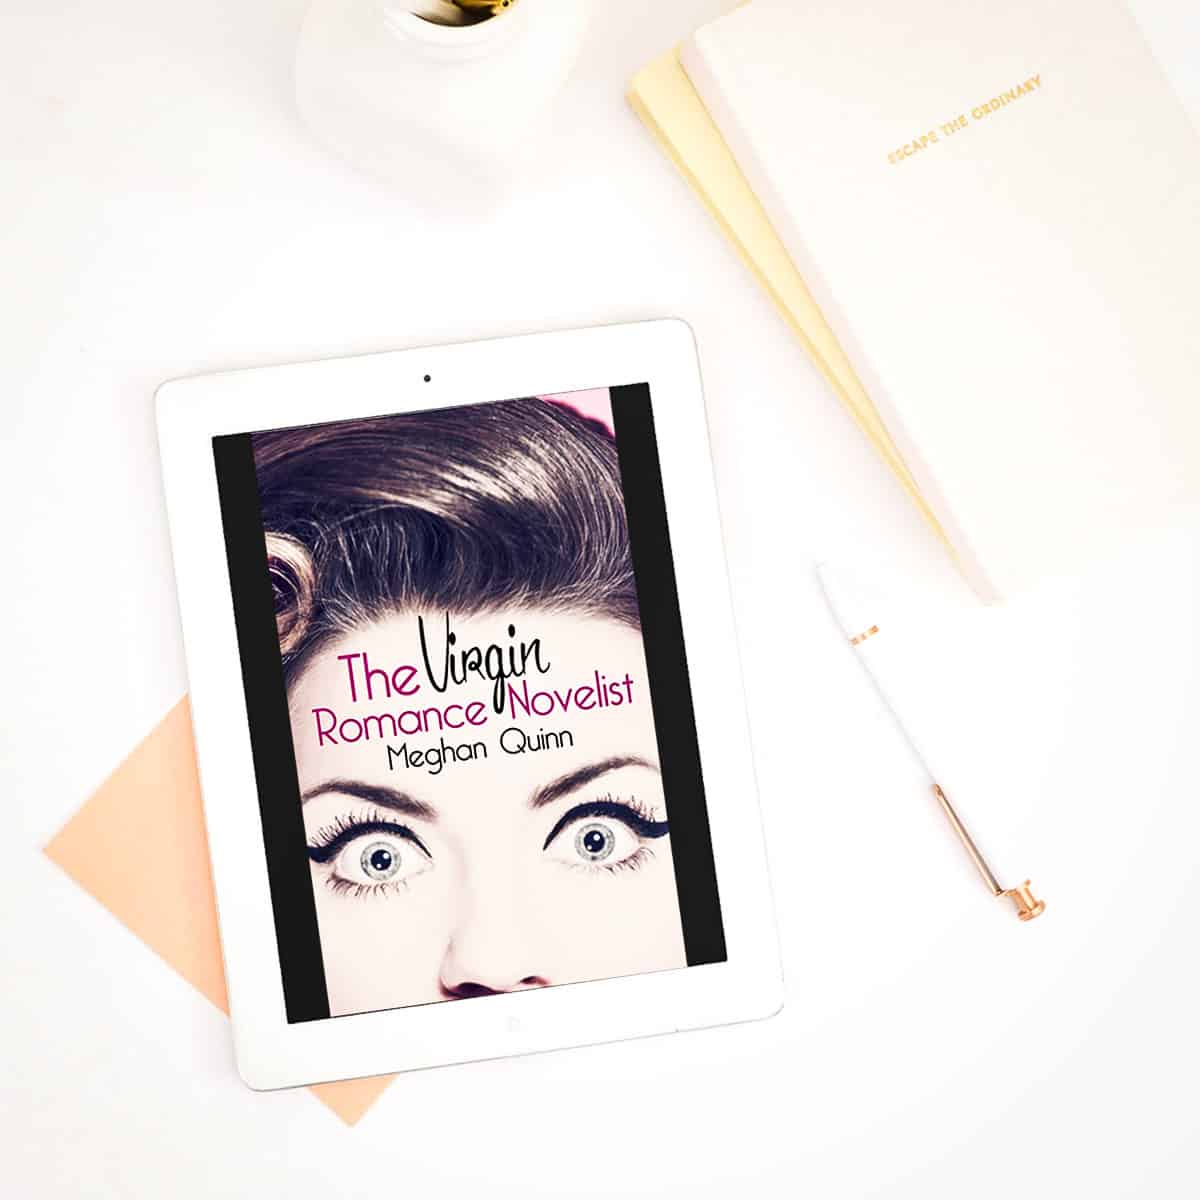 The Virgin Romance Novelist by Meghan Quinn – Book 1